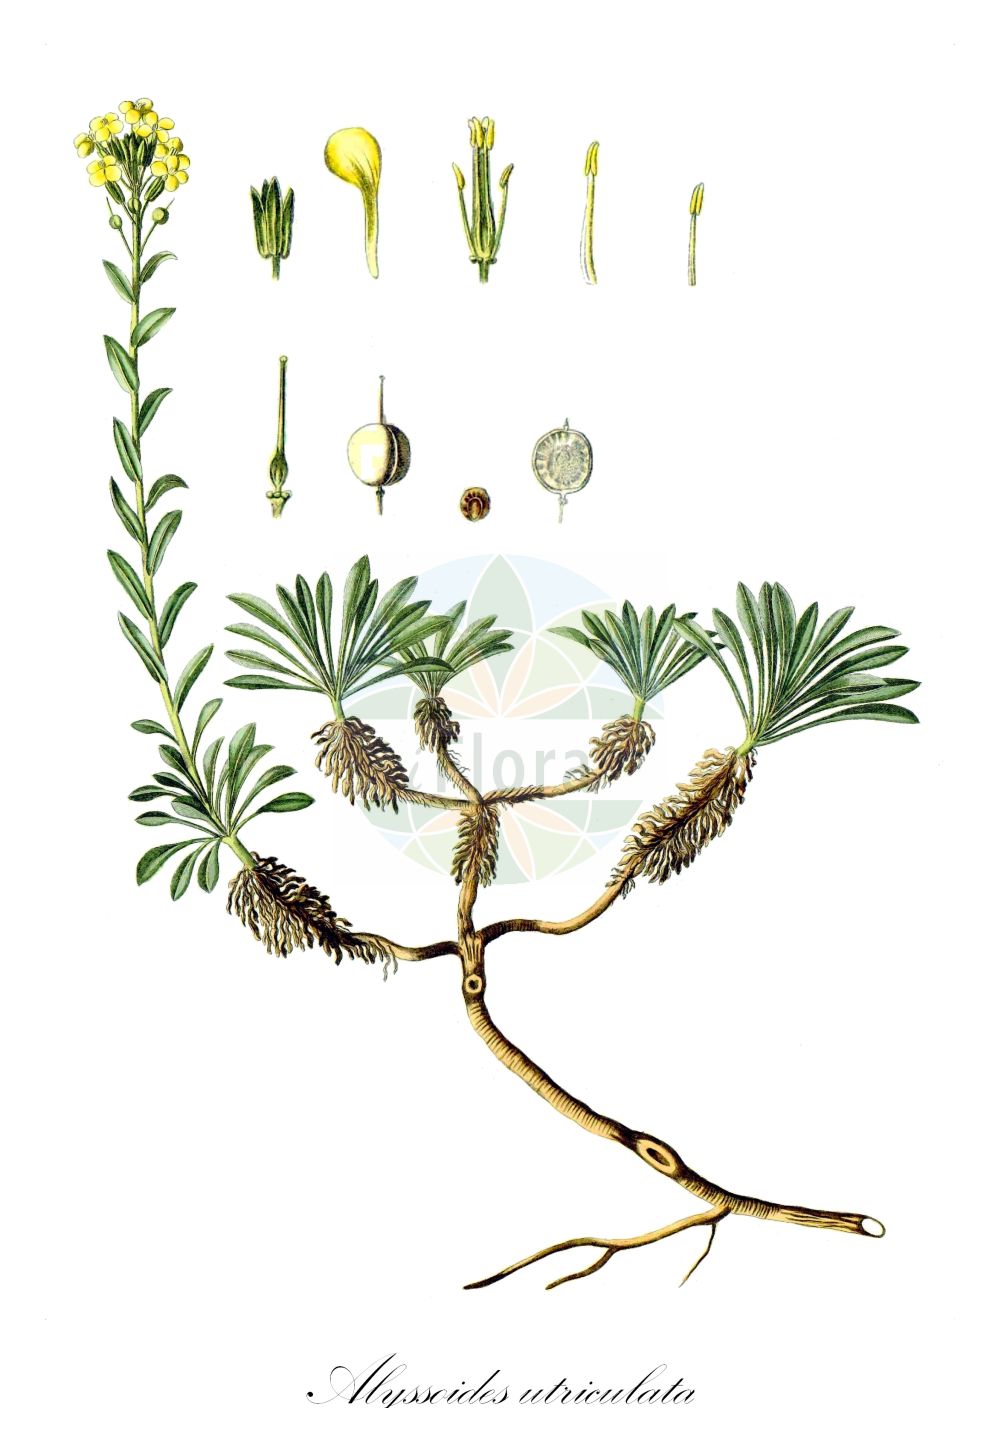 Historische Abbildung von Alyssoides utriculata. Das Bild zeigt Blatt, Bluete, Frucht und Same. ---- Historical Drawing of Alyssoides utriculata. The image is showing leaf, flower, fruit and seed.(Alyssoides utriculata,Alyssoides utriculata,Alyssoides utriculata (L.) Medik.,Alyssum oederi,Alyssum utriculatum,Cistocarpium utriculatum,Vesicaria graeca,Alyssoides,Brassicaceae,Kreuzblütler,Cabbage family,Blatt,Bluete,Frucht,Same,leaf,flower,fruit,seed,Waldstein-Wartenberg & Kitaibel (1799-1812))